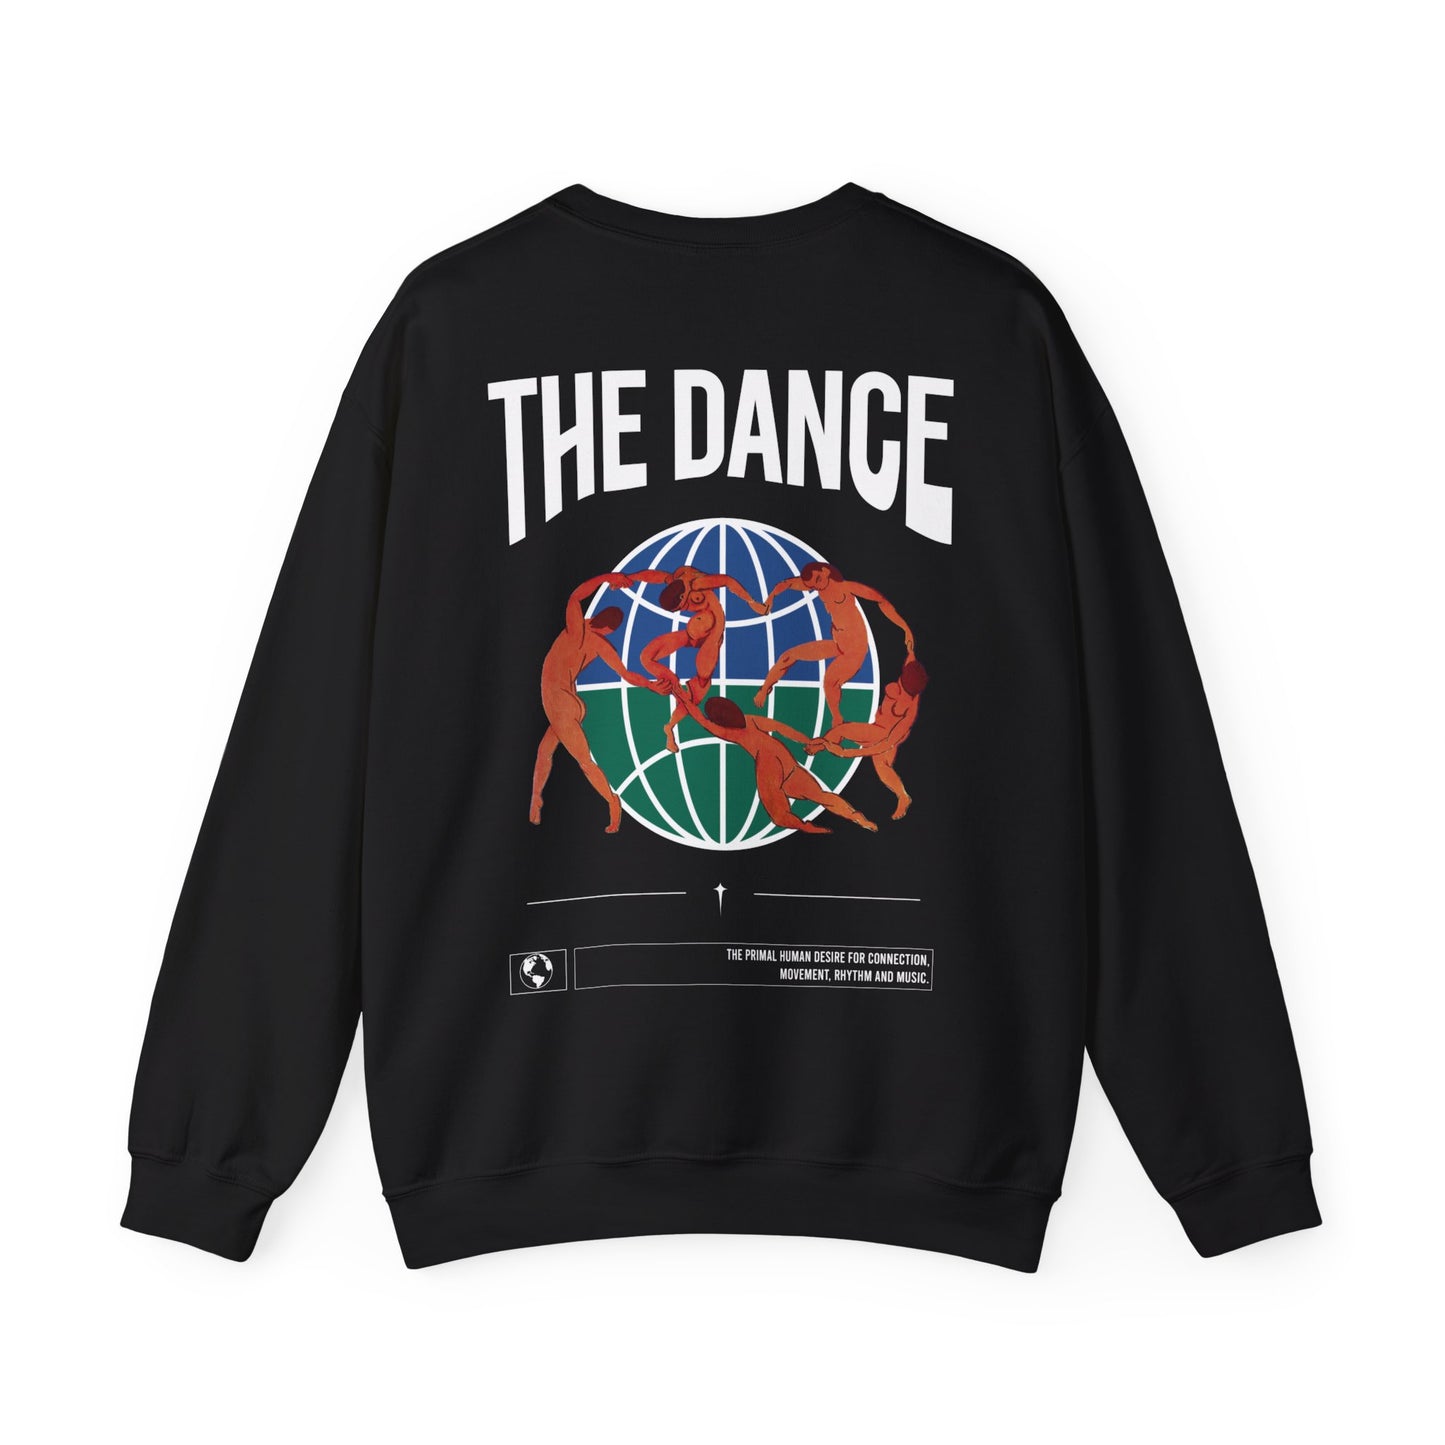 The dance Sweatshirt - Matisse